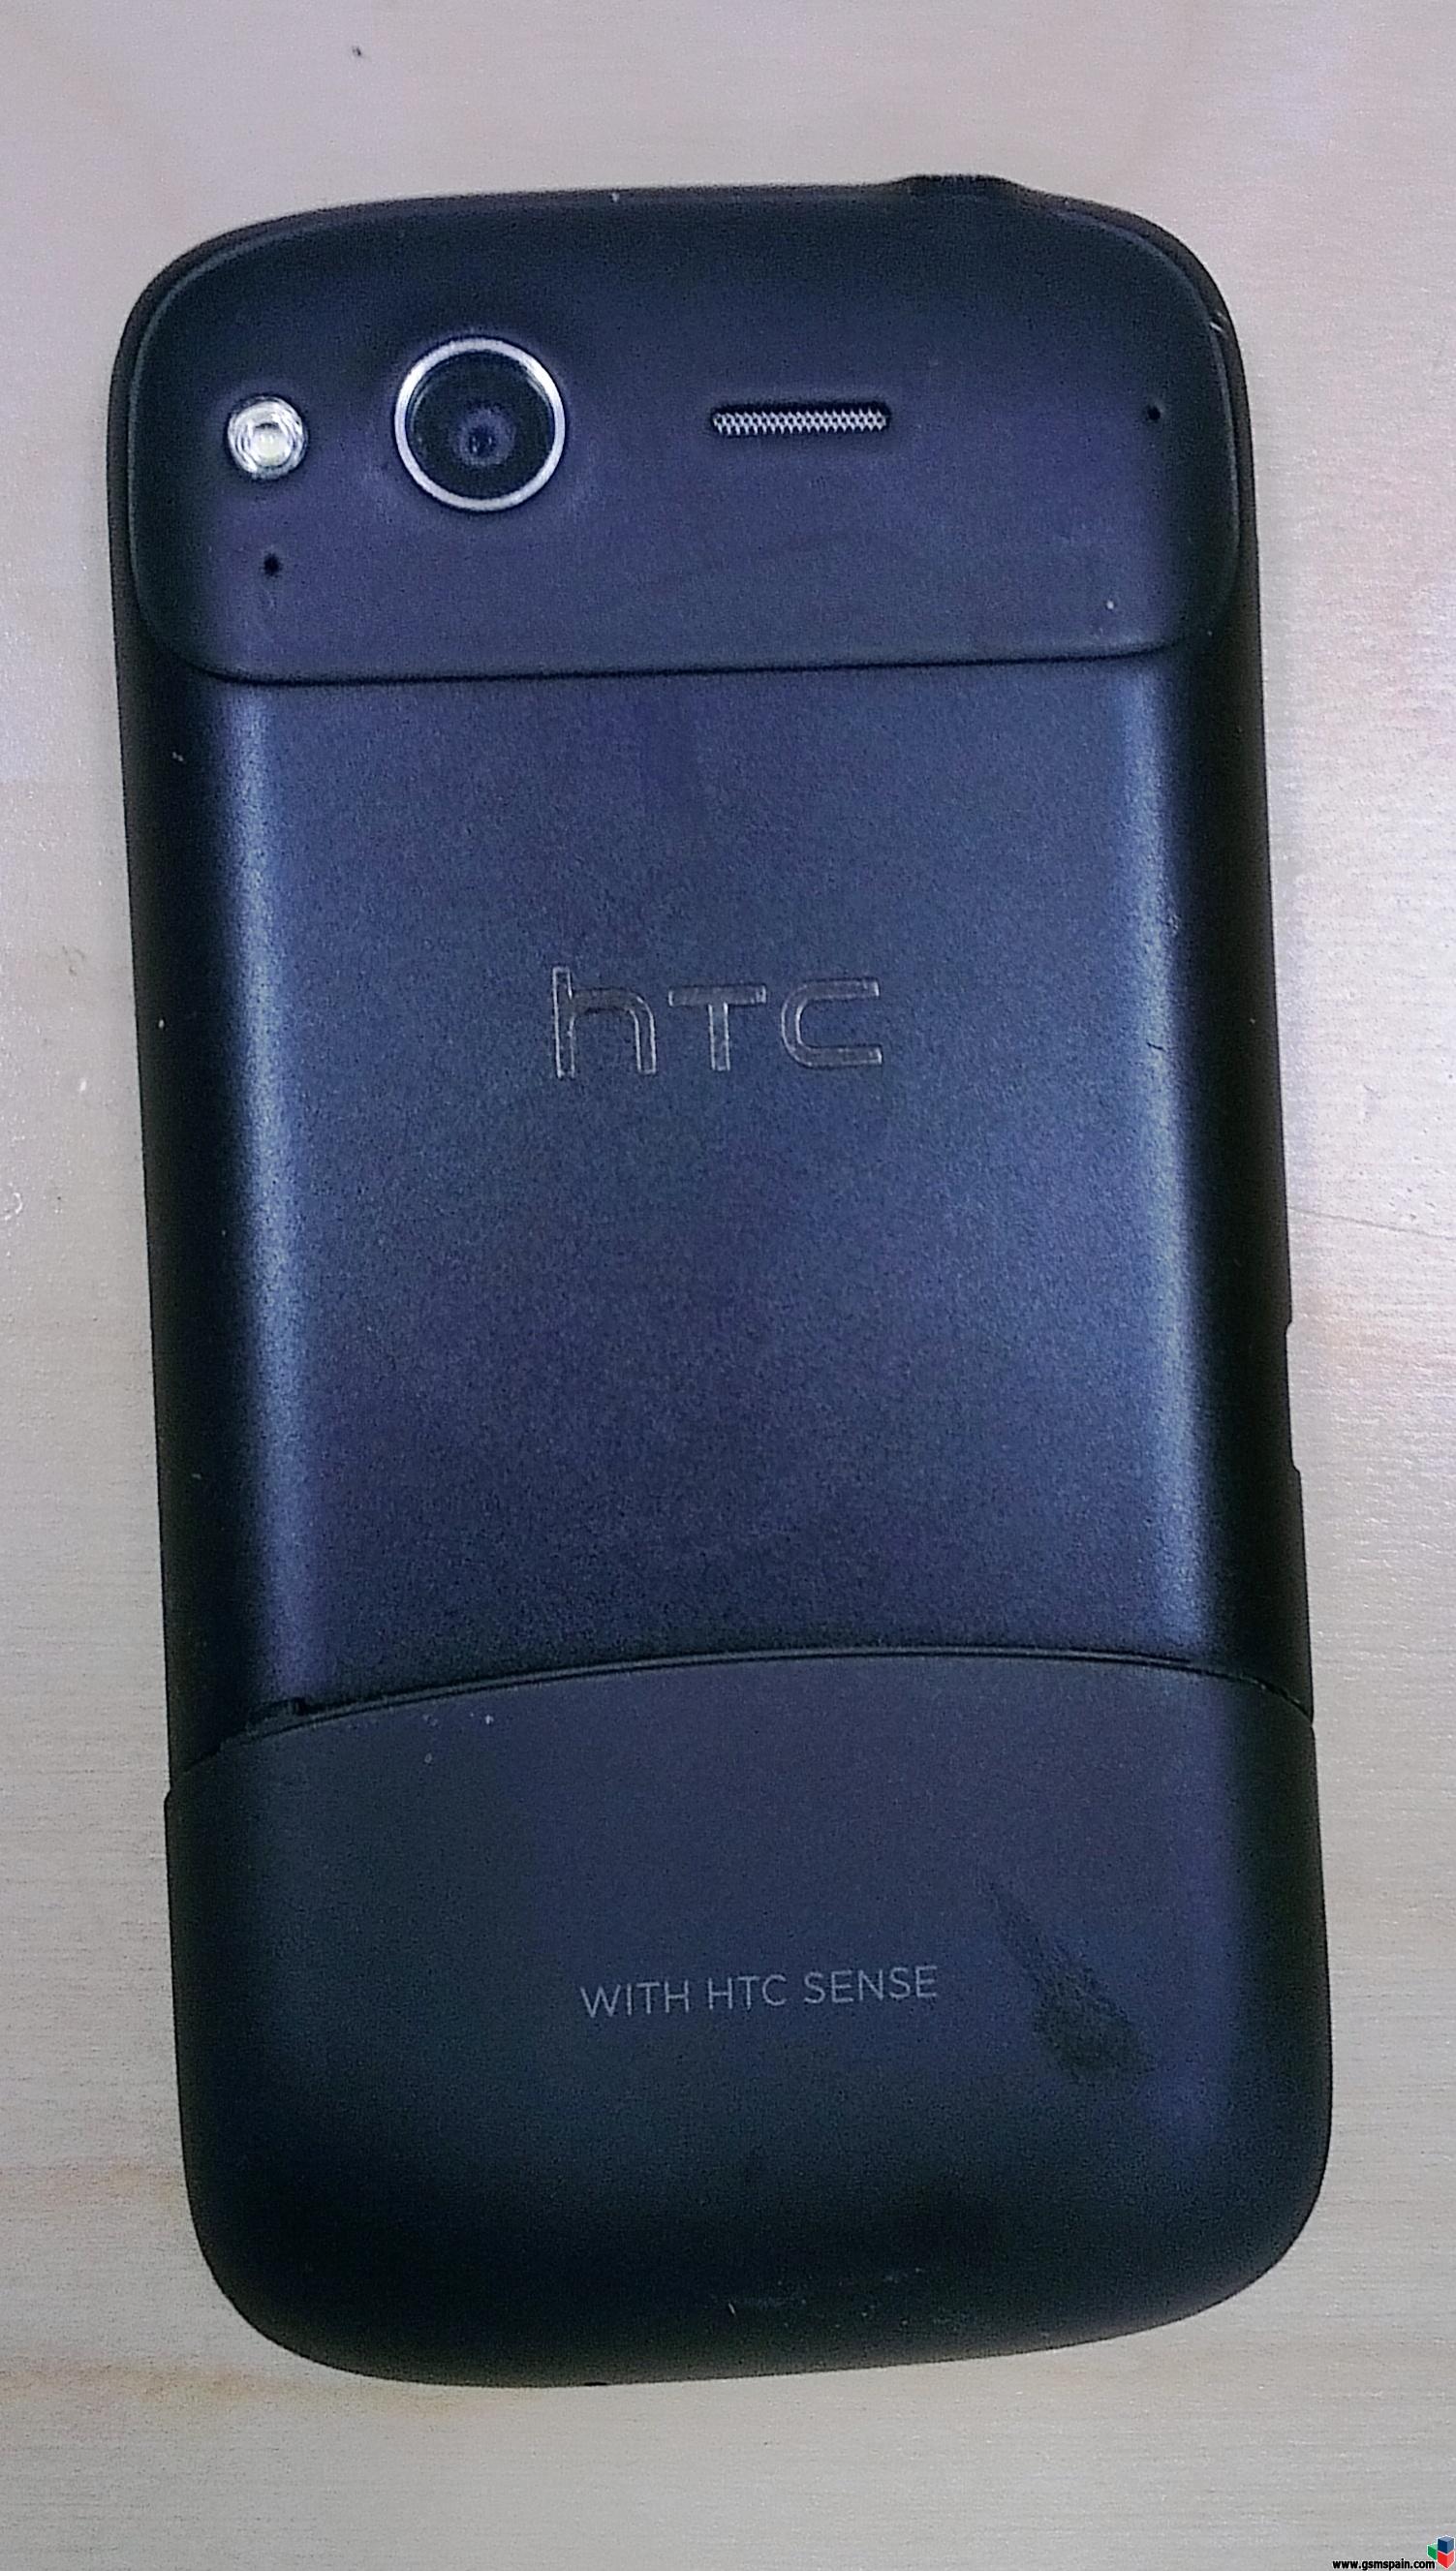 [VENDO] HTC Desire S liberado, seminuevo, muy poco uso!!!